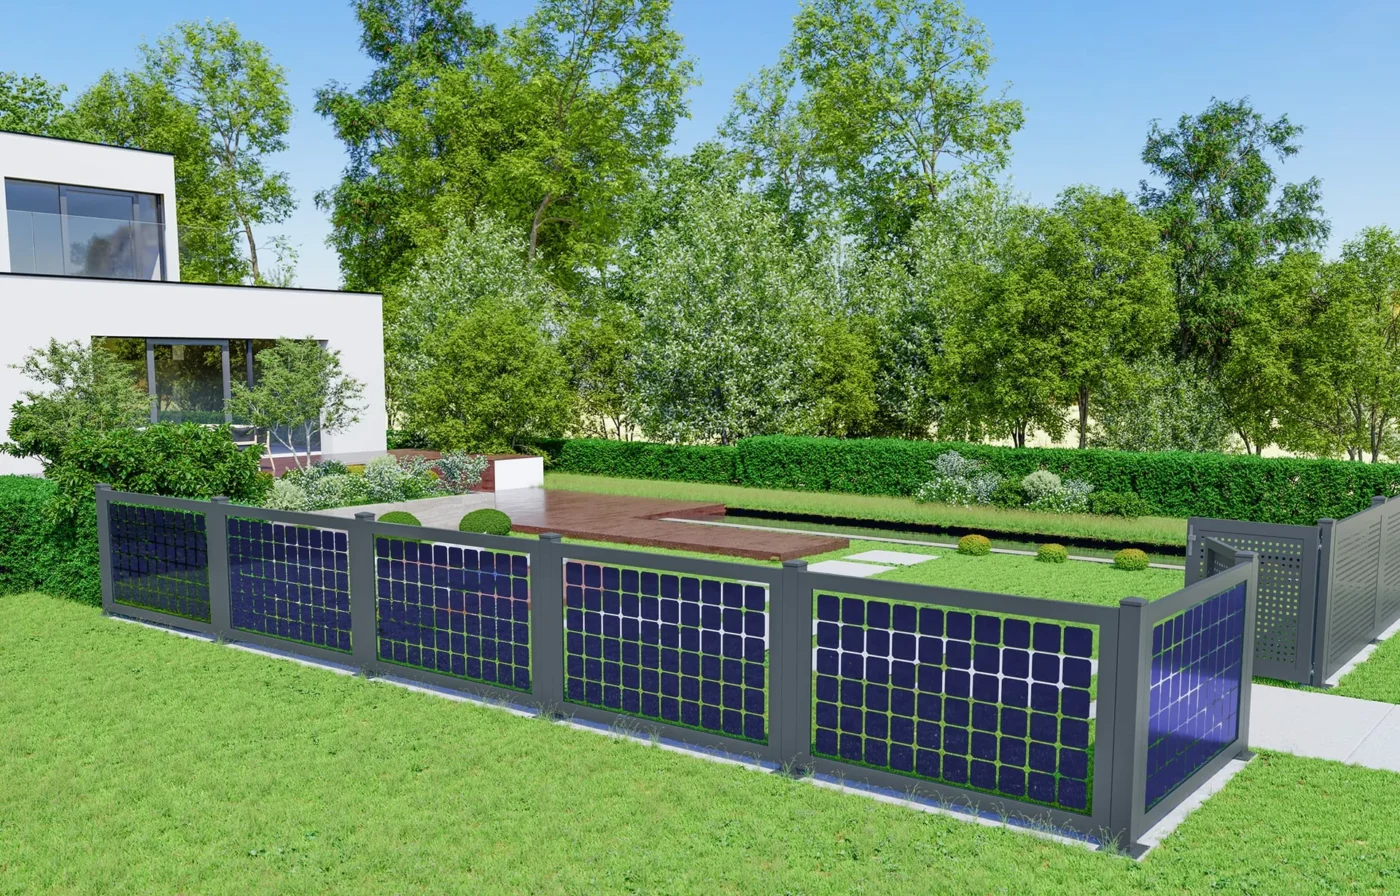 Solarni paneli umjesto ograde? Je li to dobra ideja?